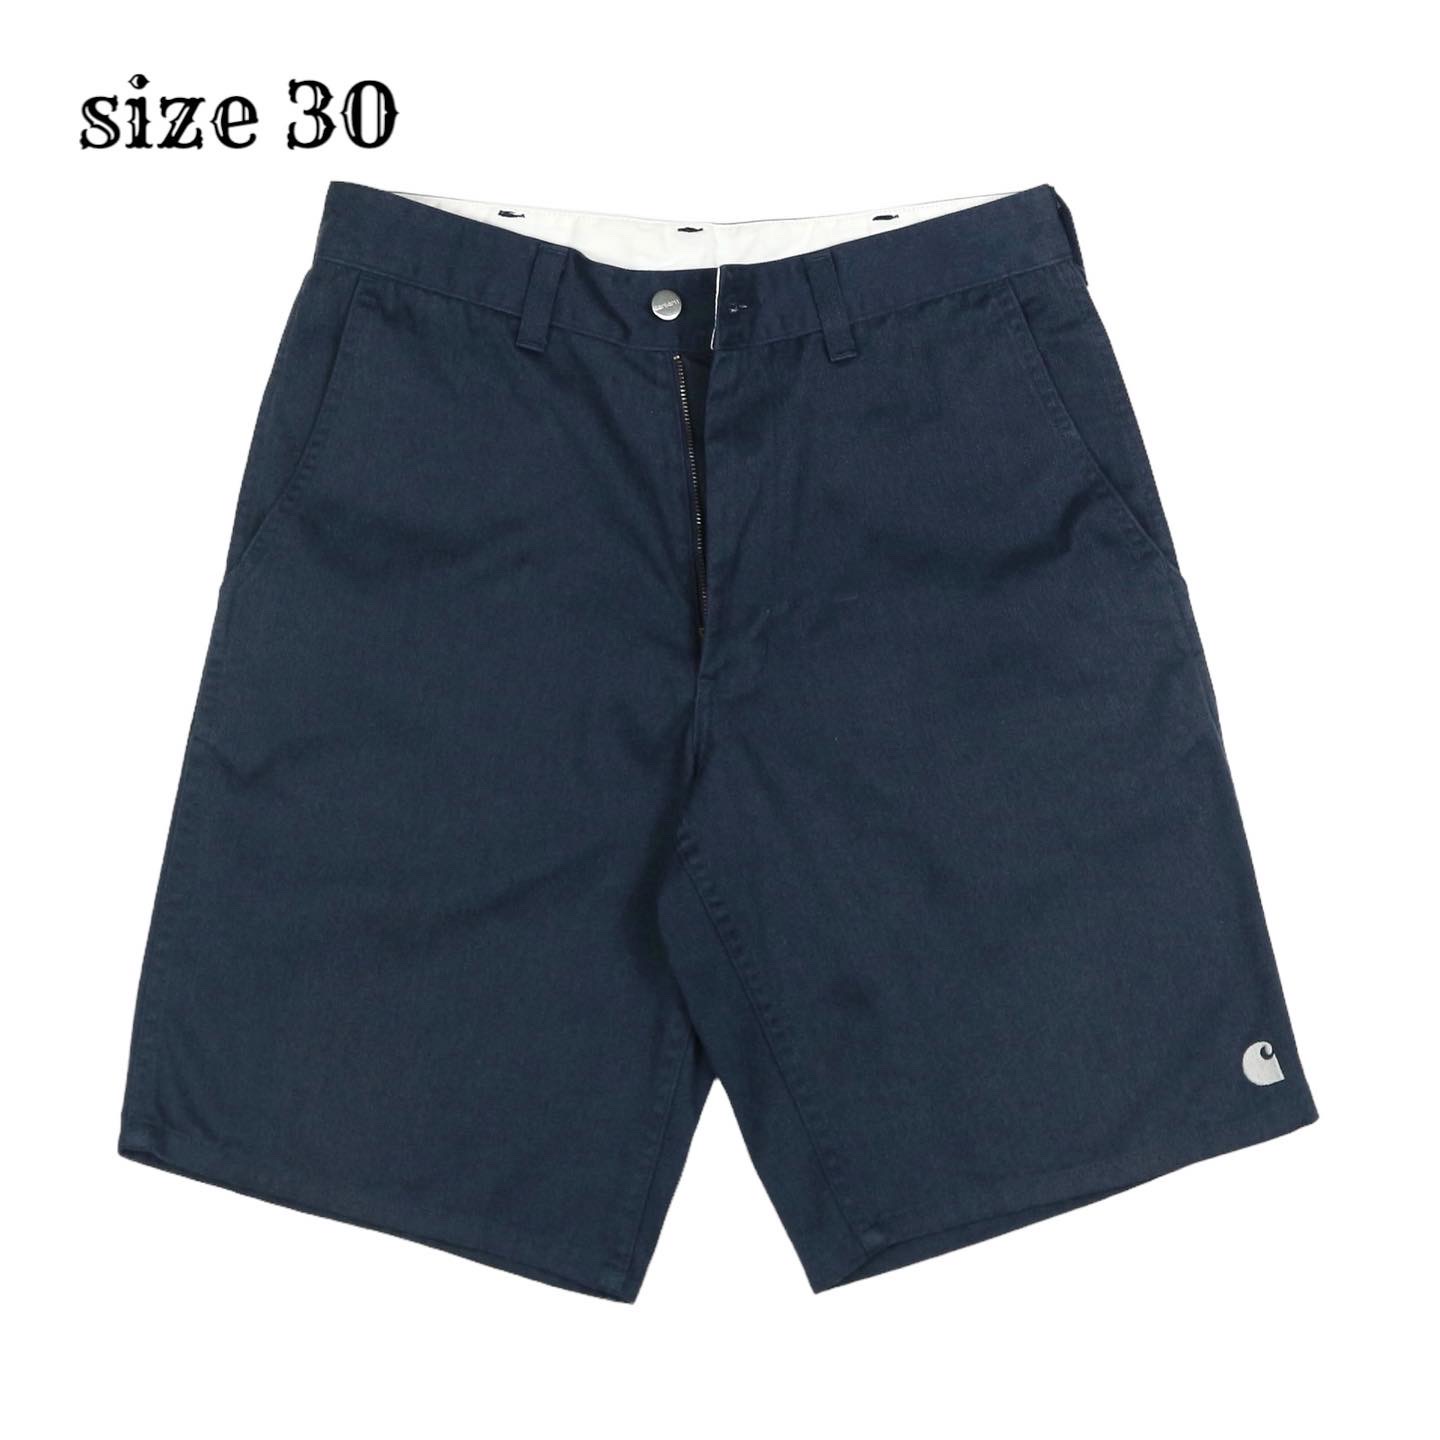 Carhartt Work Shorts Size 30